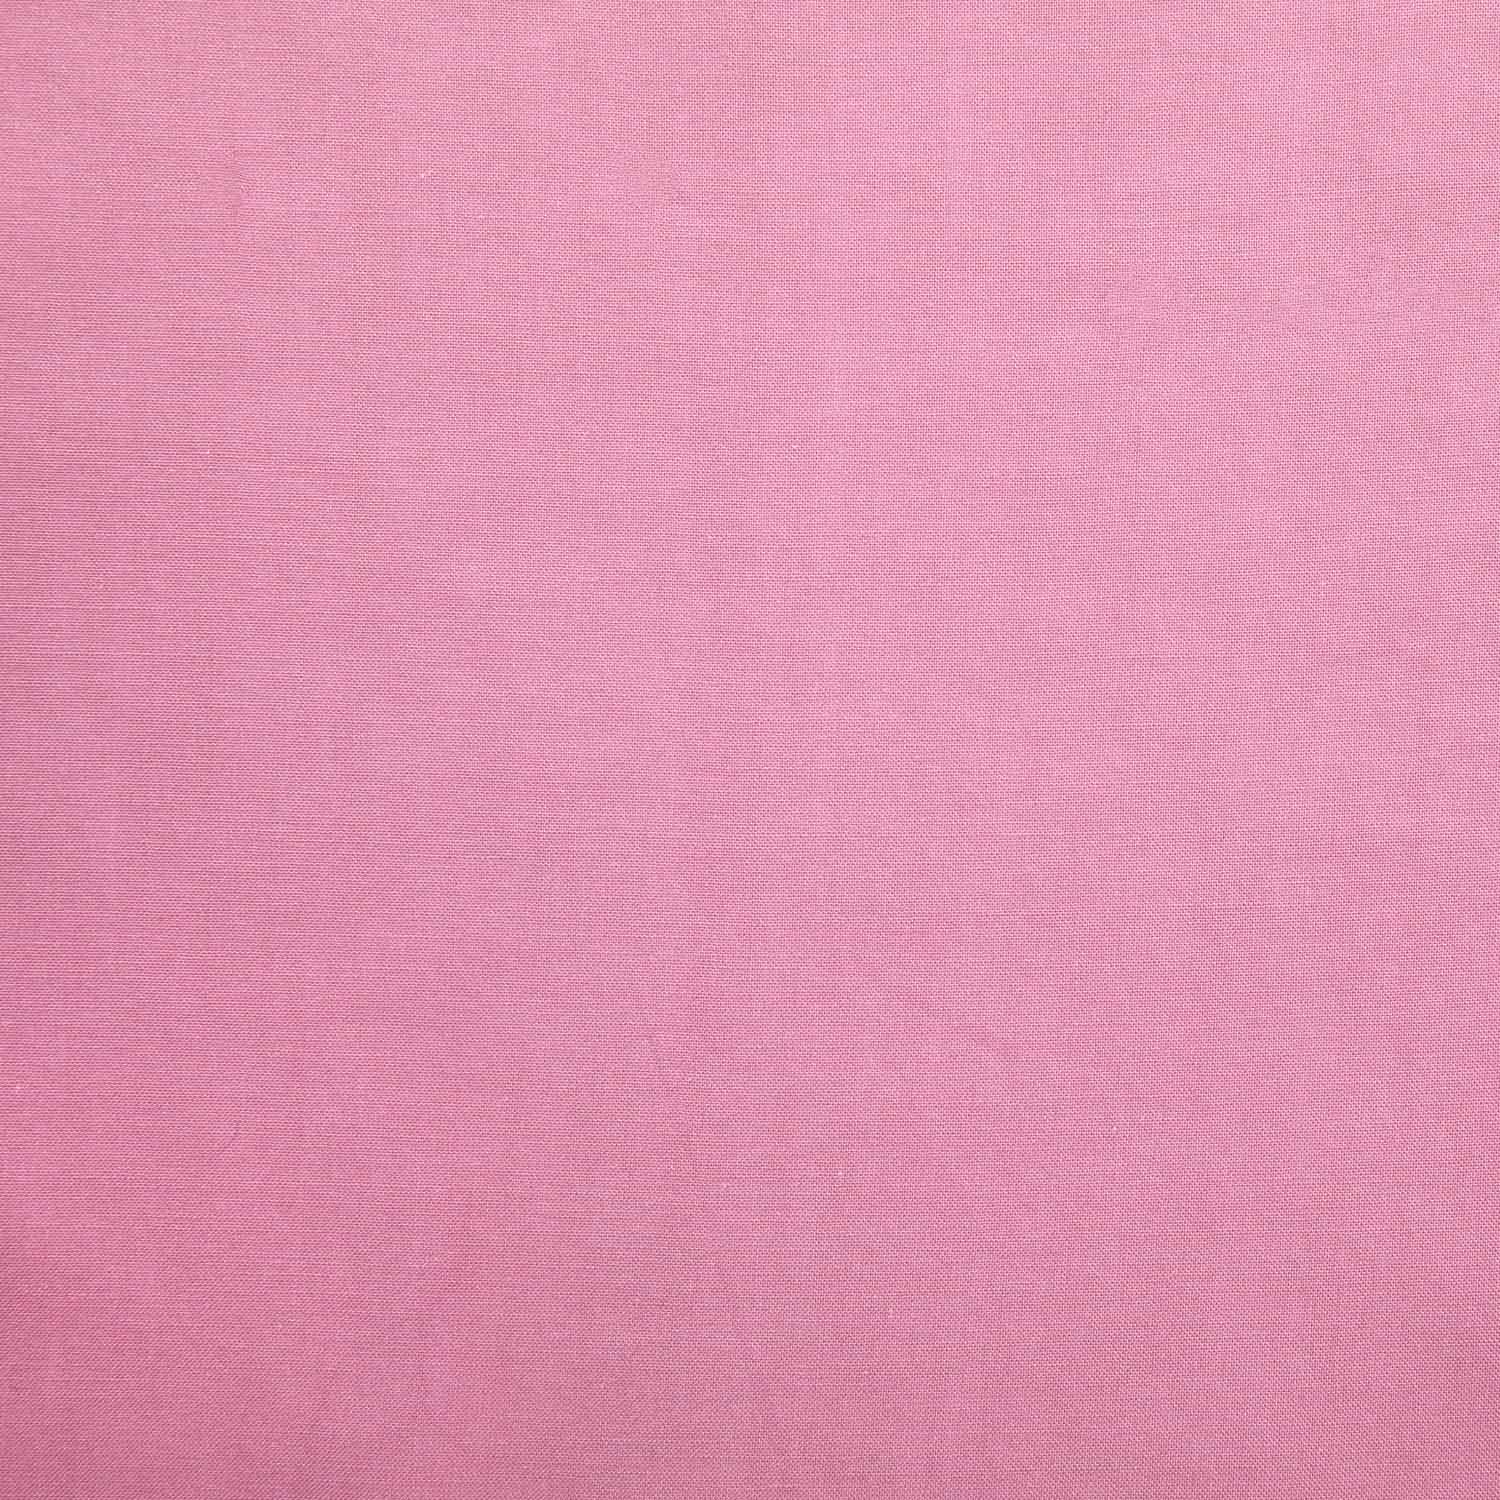 Voile Cotton - Algodón 100% Orgánico - Pink